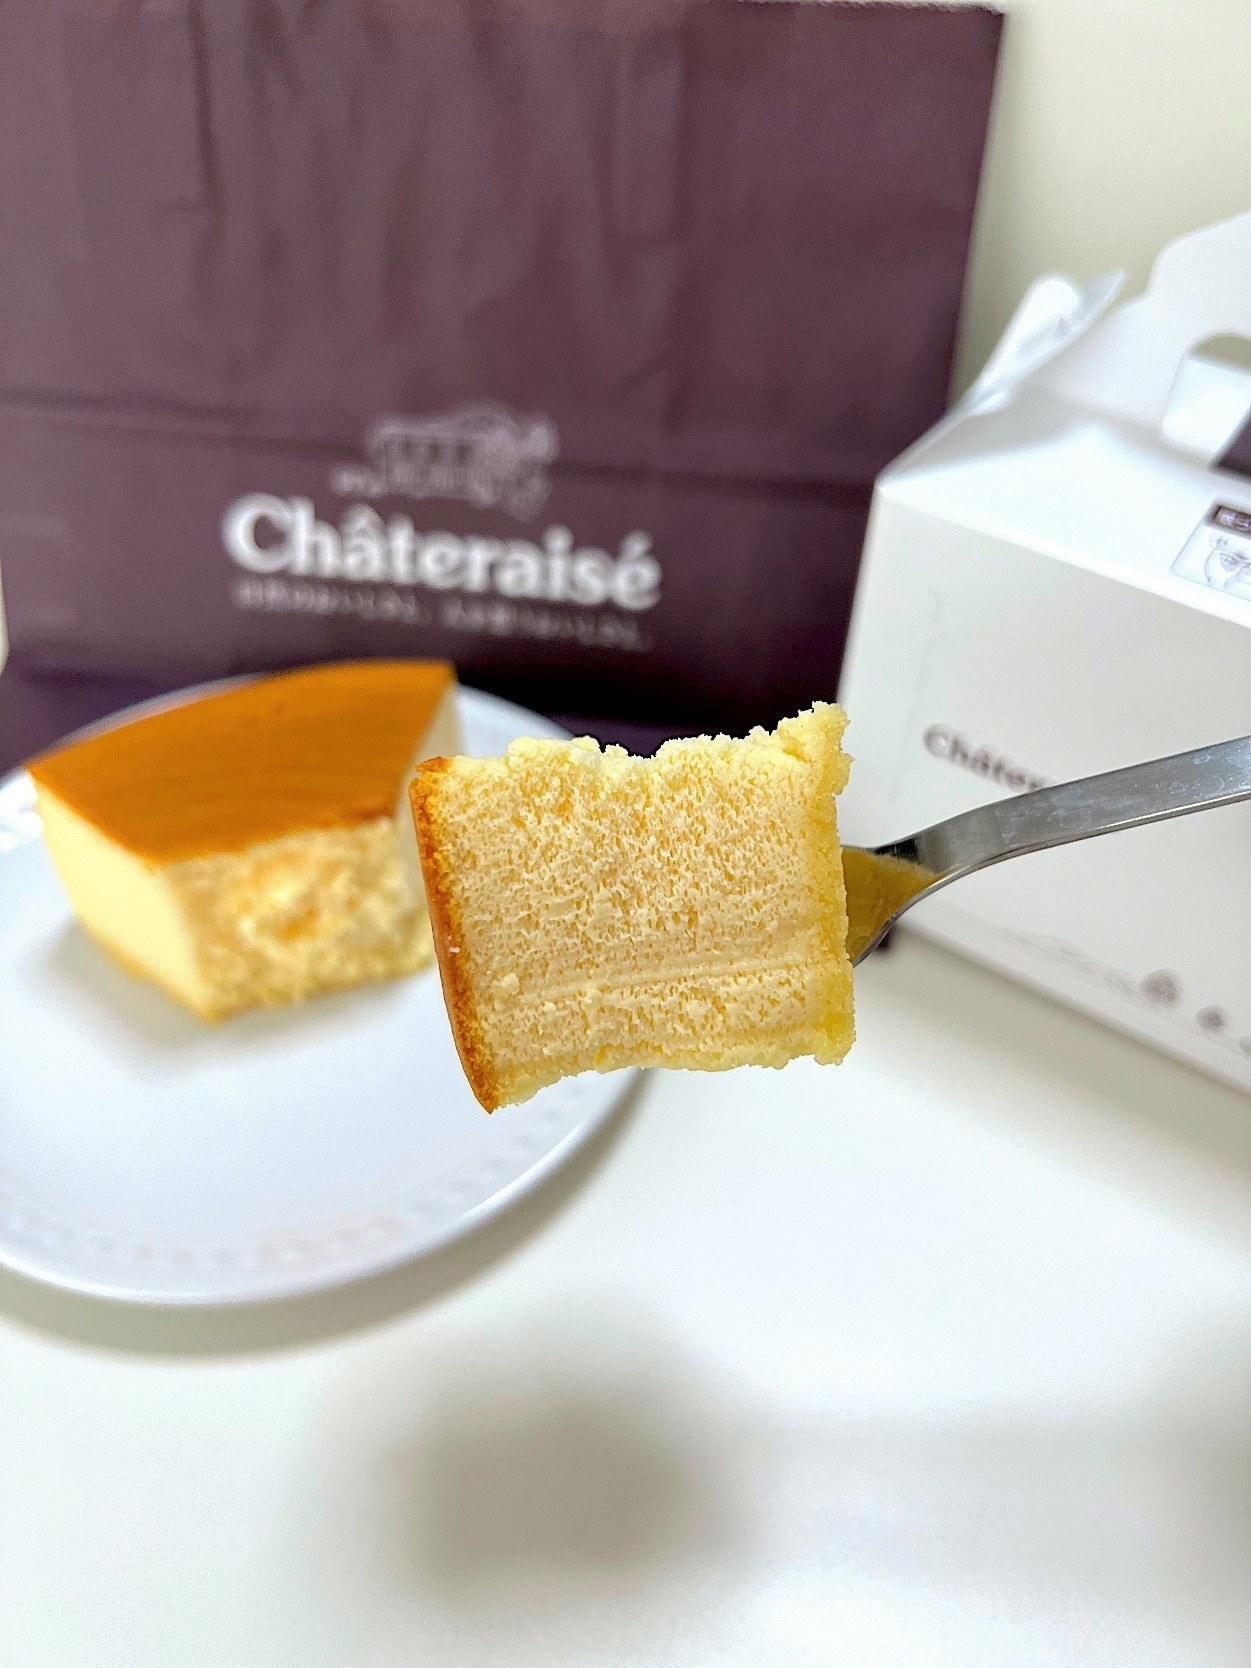 シャトレーゼ（Chateraise）のおすすめスイーツ「なめらかスフレチーズケーキ」